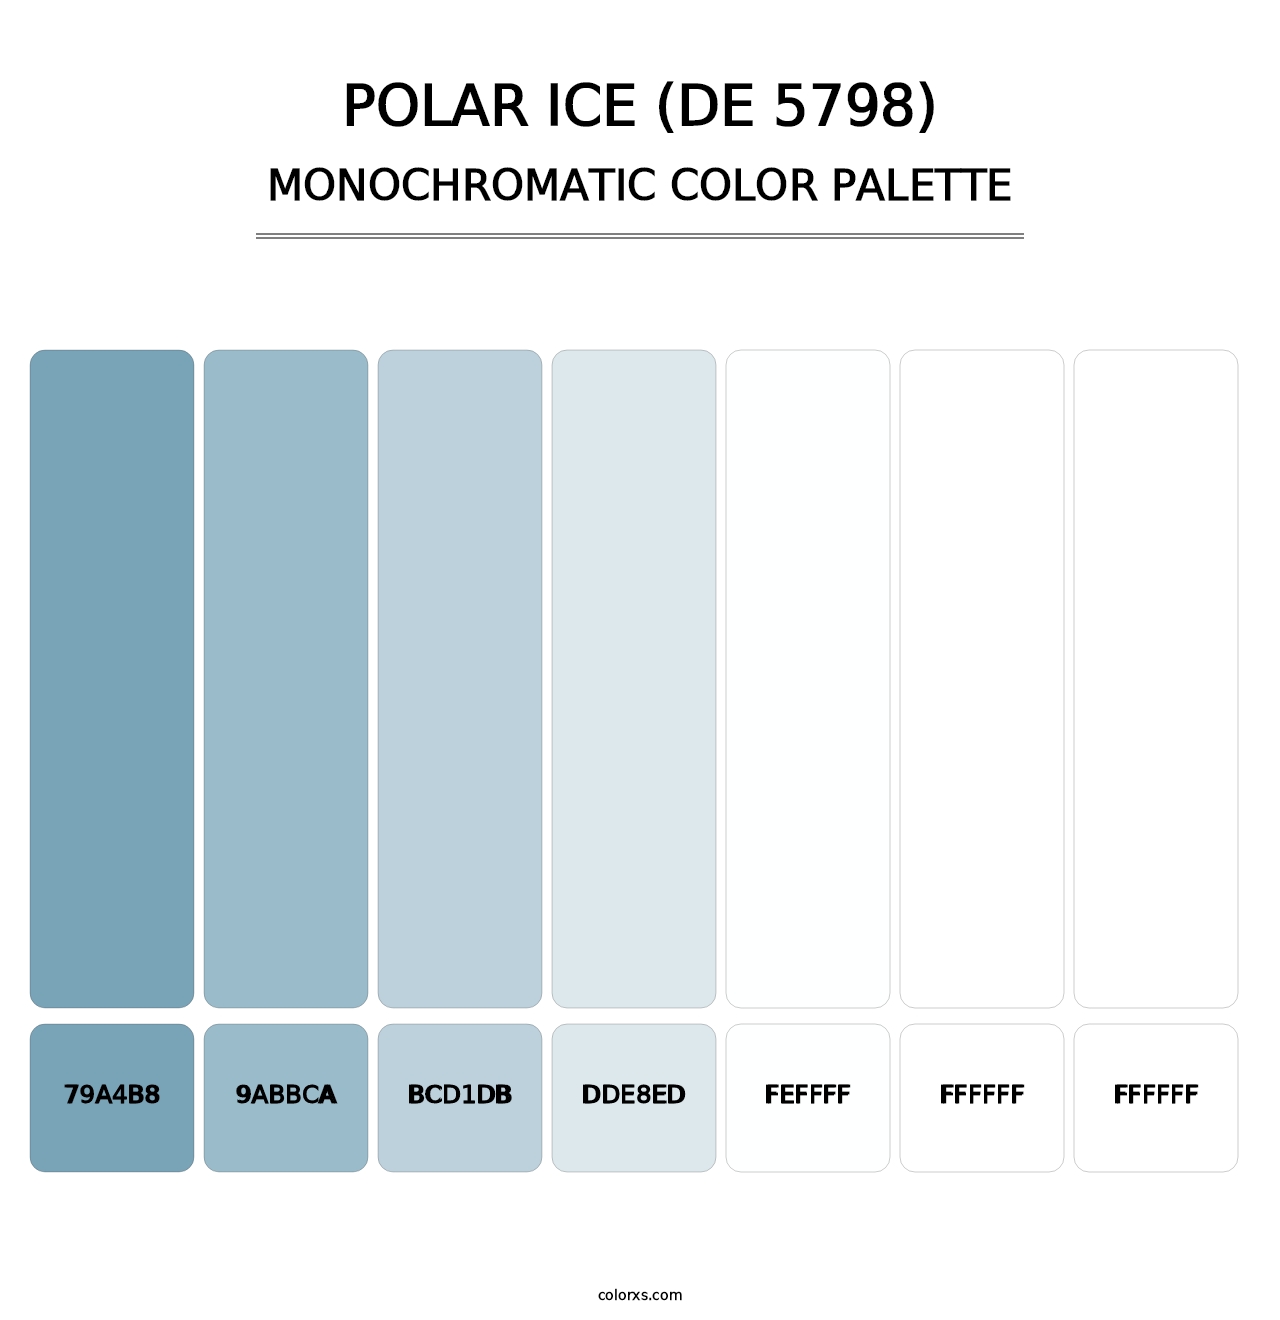 Polar Ice (DE 5798) - Monochromatic Color Palette